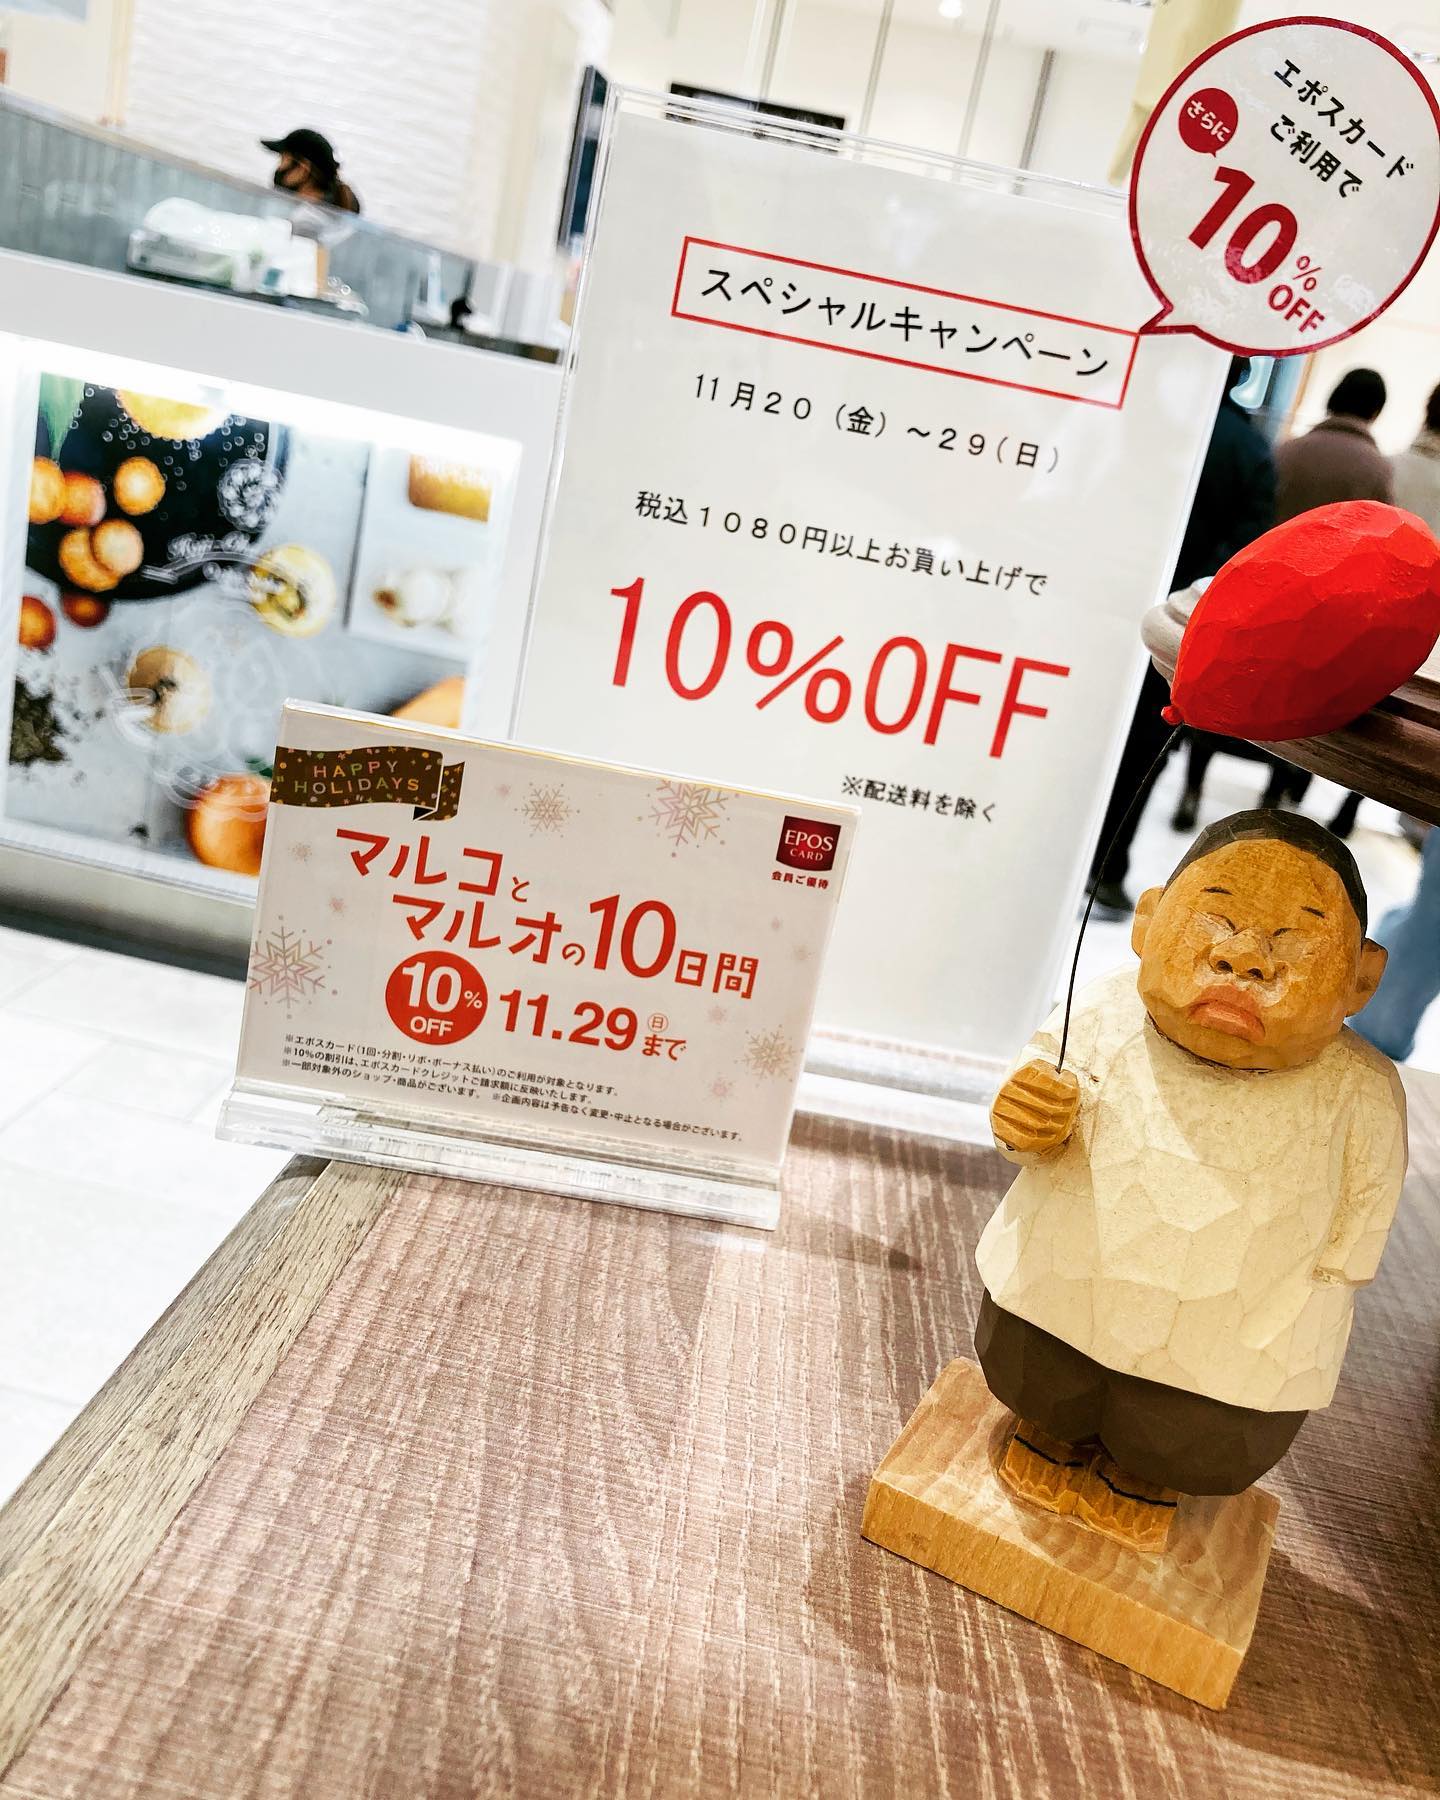 .いつもありがとうございます.お茶の菓さいさい神戸マルイ店です♩..現在マルイ店では、〜11.29(日)までマルコとマルオの10日間が開催されております.この期間にあわせて、1080円(税込)以上お買い上げで10%offのお得なキャンペーンを実施中です️..エポスカードをご利用のお客様はさらに10%off.このお得な期間に、ぜひお立ち寄り下さいませ️️..皆様のご来店お待ちしております！.#お茶#ほうじ茶#ほうじ茶好き#ほうじ茶スイーツ#ロールケーキ#ほうじ茶ロールケーキ #栗#チーズケーキ#ほうじ茶チーズケーキ#テリーヌ#ほうじ茶専門店